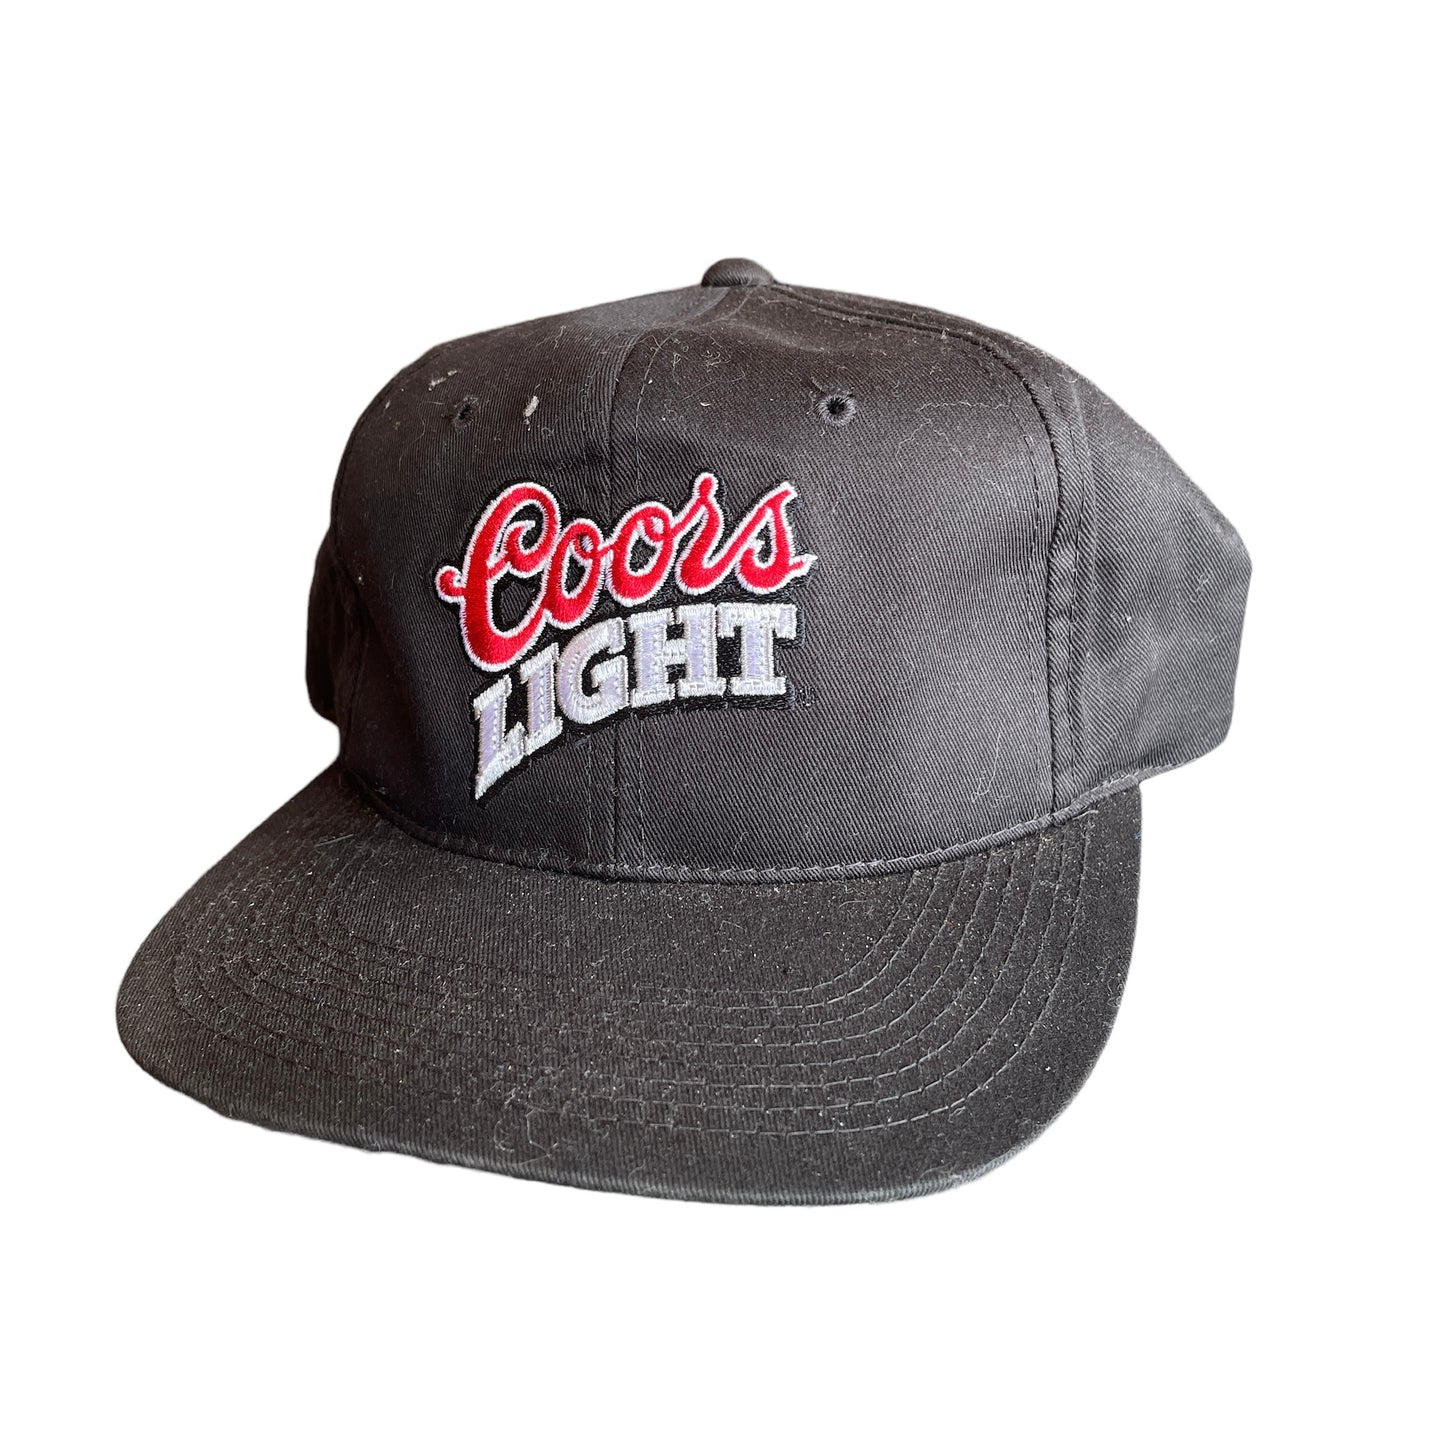 Vintage Coors Light Snap Back Hat